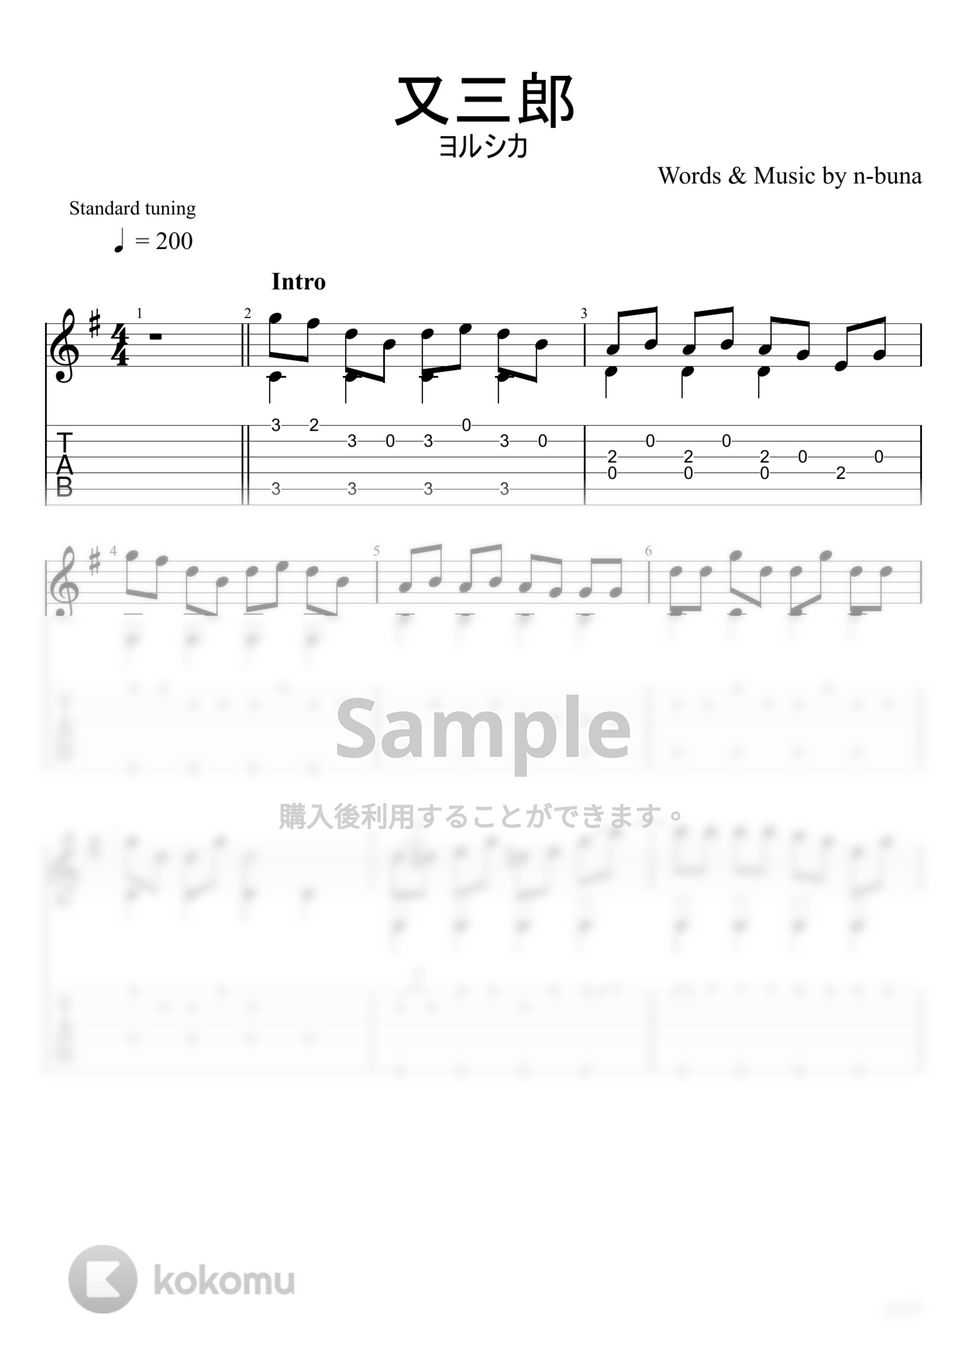 ヨルシカ - 又三郎 (ソロギター) by u3danchou